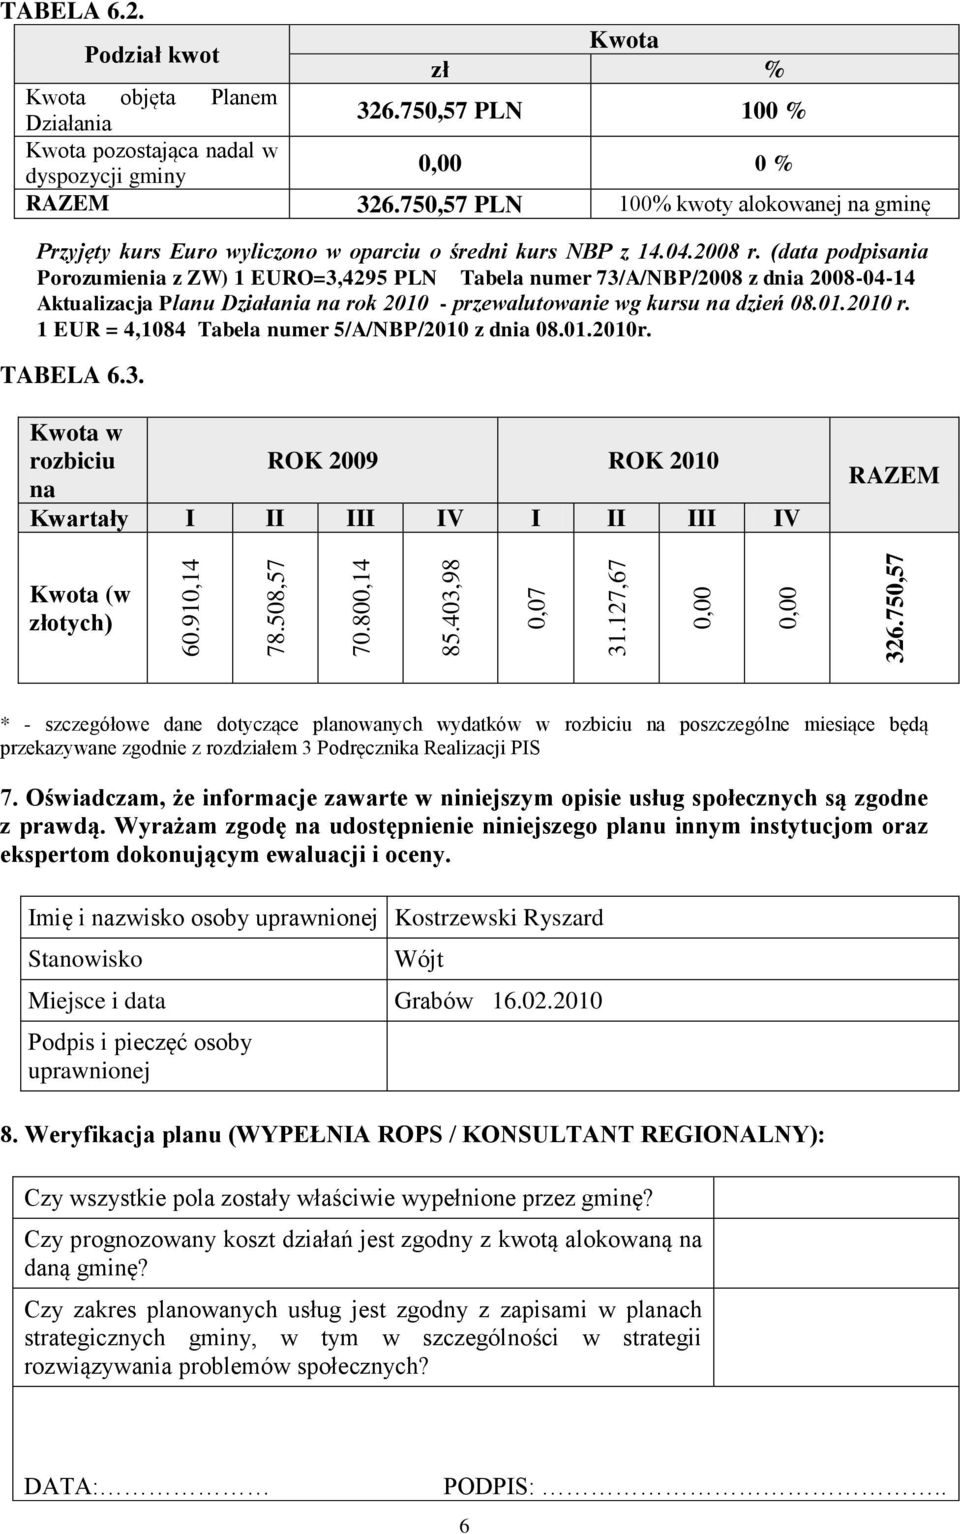 (data podpisania Porozumienia z ZW) 1 EURO=3,4295 PLN Tabela numer 73/A/NBP/2008 z dnia 2008-04-14 Aktualizacja Planu na rok 2010 - przewalutowanie wg kursu na dzień 08.01.2010 r.